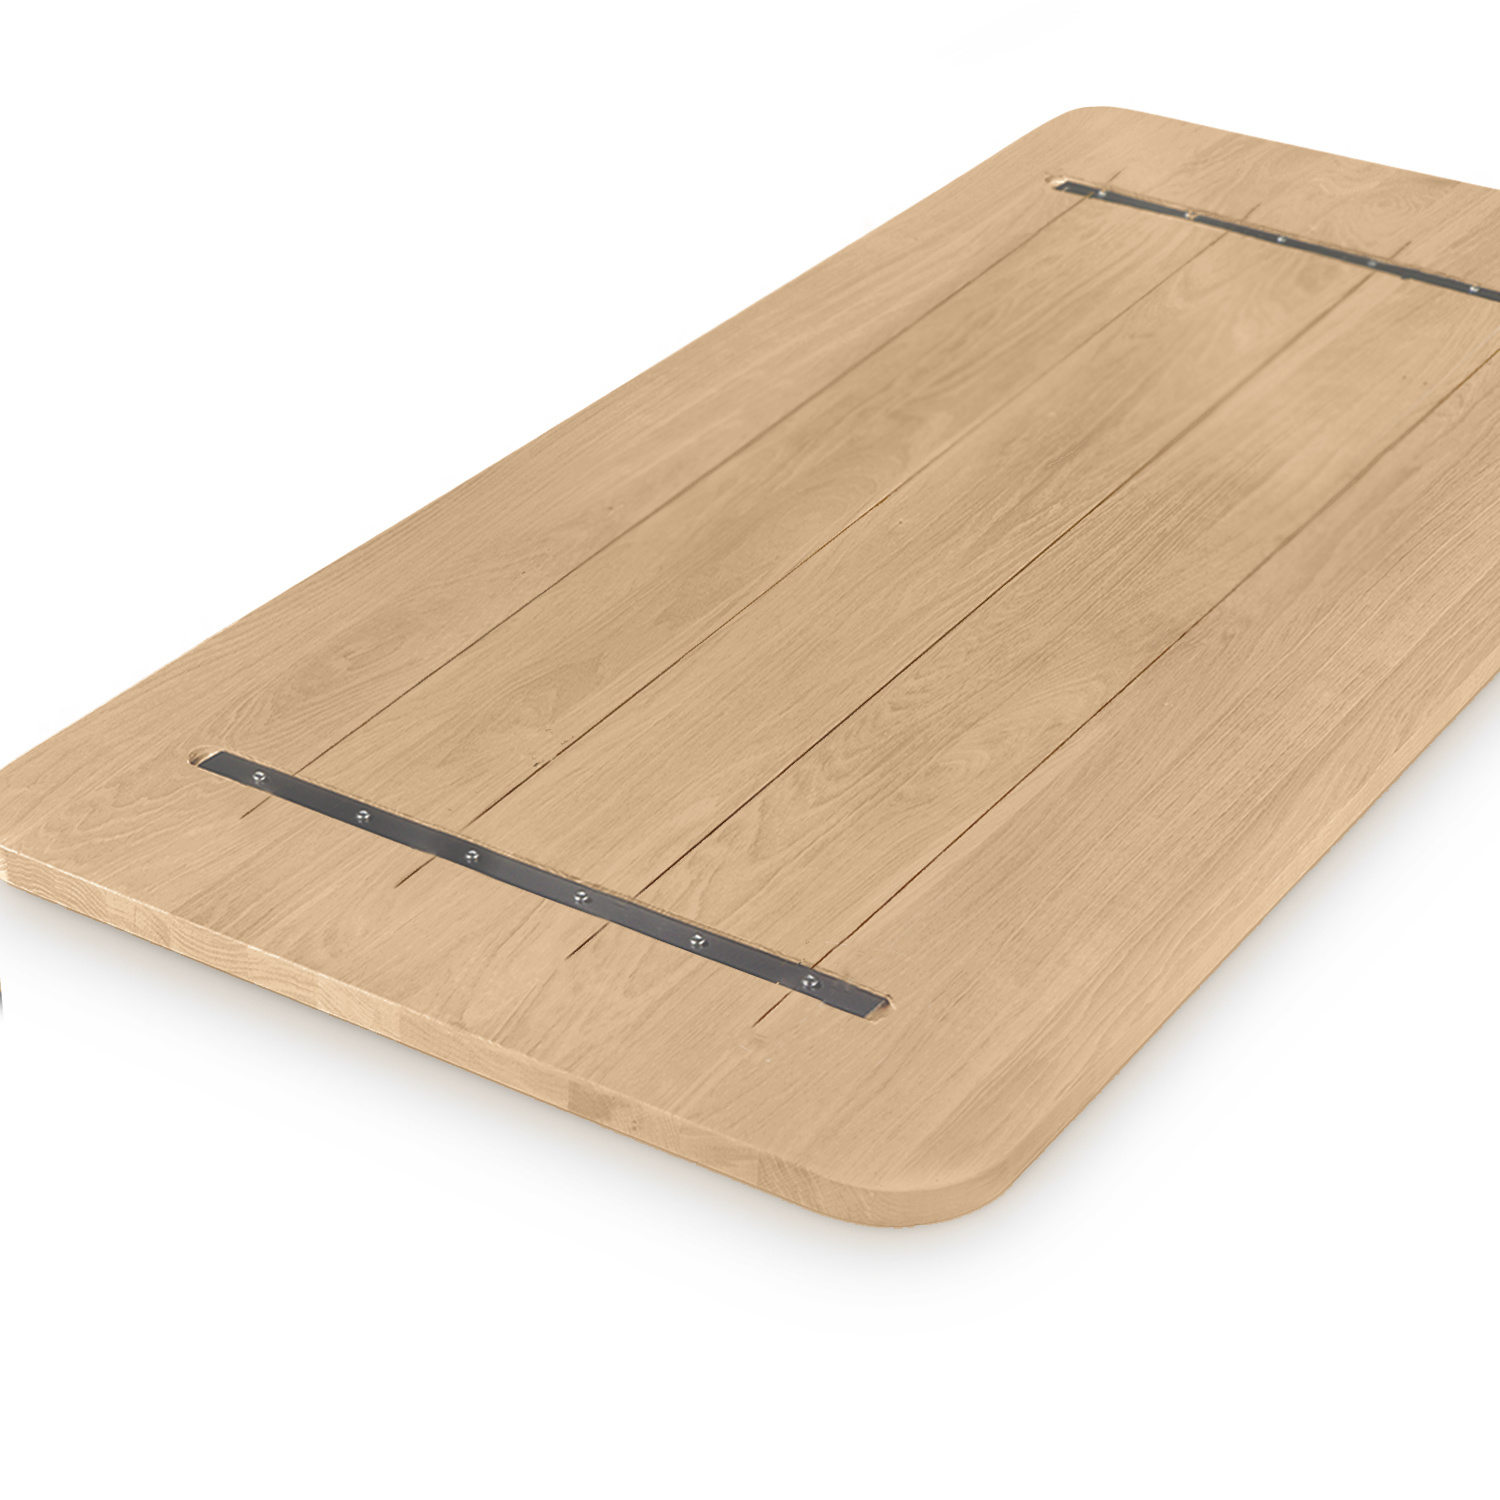  Eiken tafelblad met ronde hoeken - op maat - 4 cm dik (1-laag) - rustiek Europees eikenhout - verlijmd kd 8-12% - 50-120x50-300 cm  - Afgeronde hoeken radius 5, 8, of 10 cm